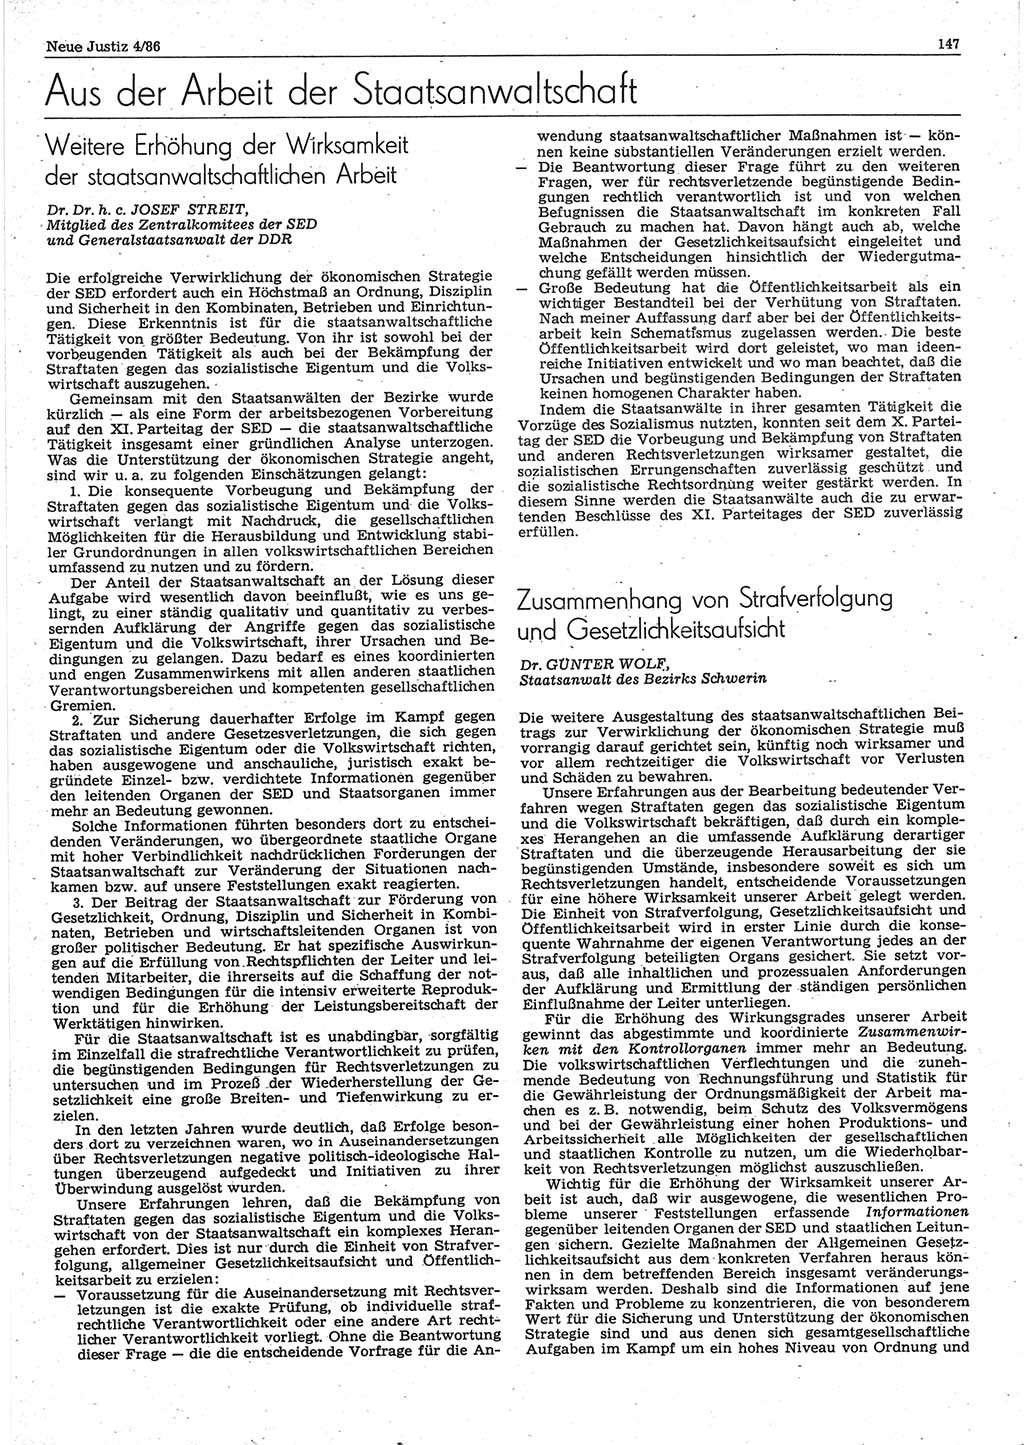 Neue Justiz (NJ), Zeitschrift für sozialistisches Recht und Gesetzlichkeit [Deutsche Demokratische Republik (DDR)], 40. Jahrgang 1986, Seite 147 (NJ DDR 1986, S. 147)